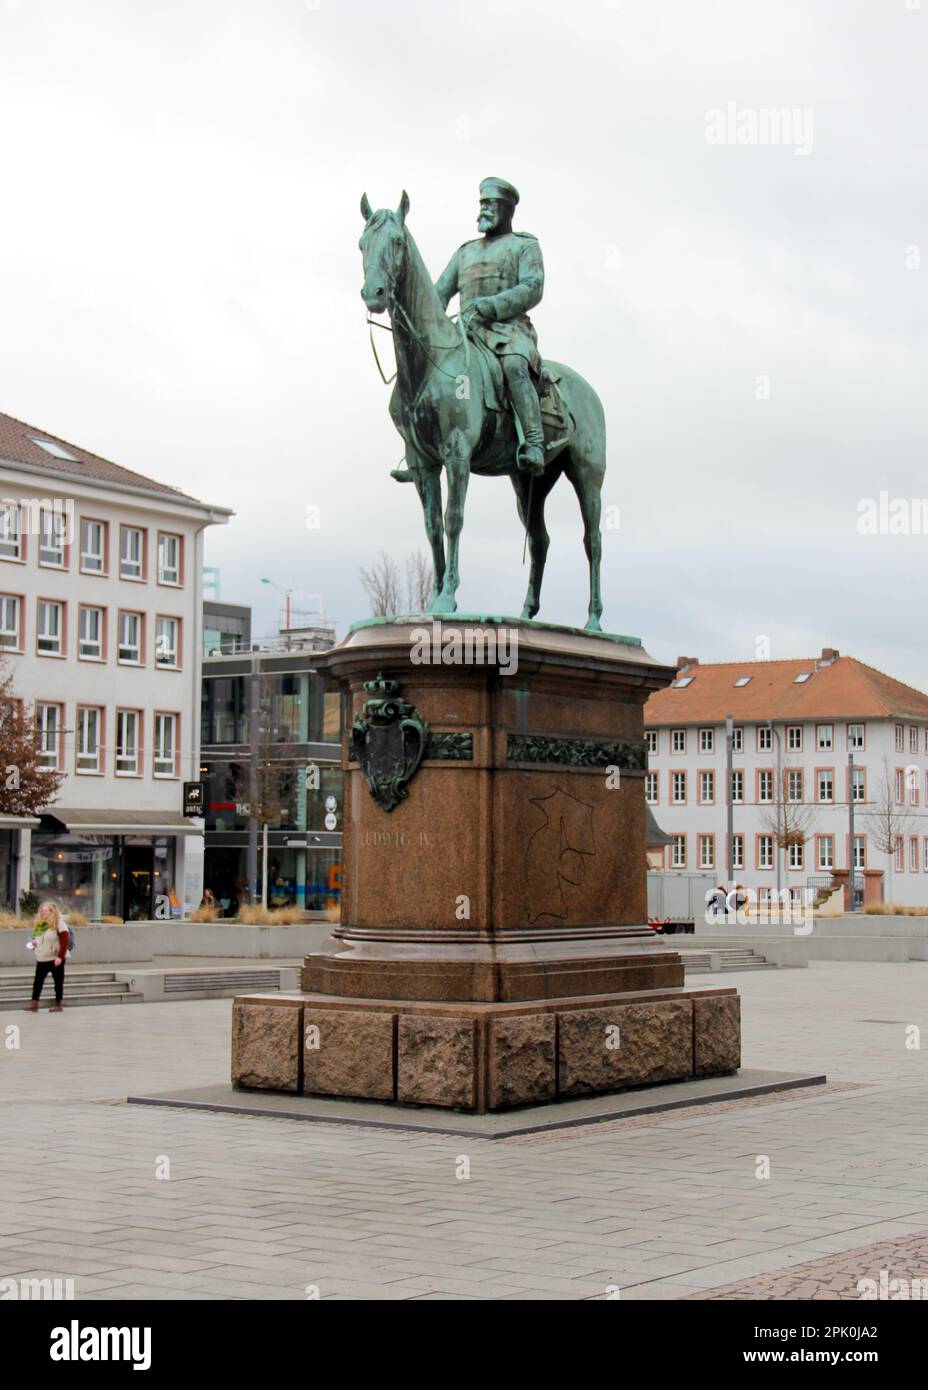 Estatua ecuestre de Ludwig IV, Gran Duque de Hesse, en la Friedensplatz, obra de arte de Fritz Schaper, creada en 1898, Darmstadt, Alemania Foto de stock